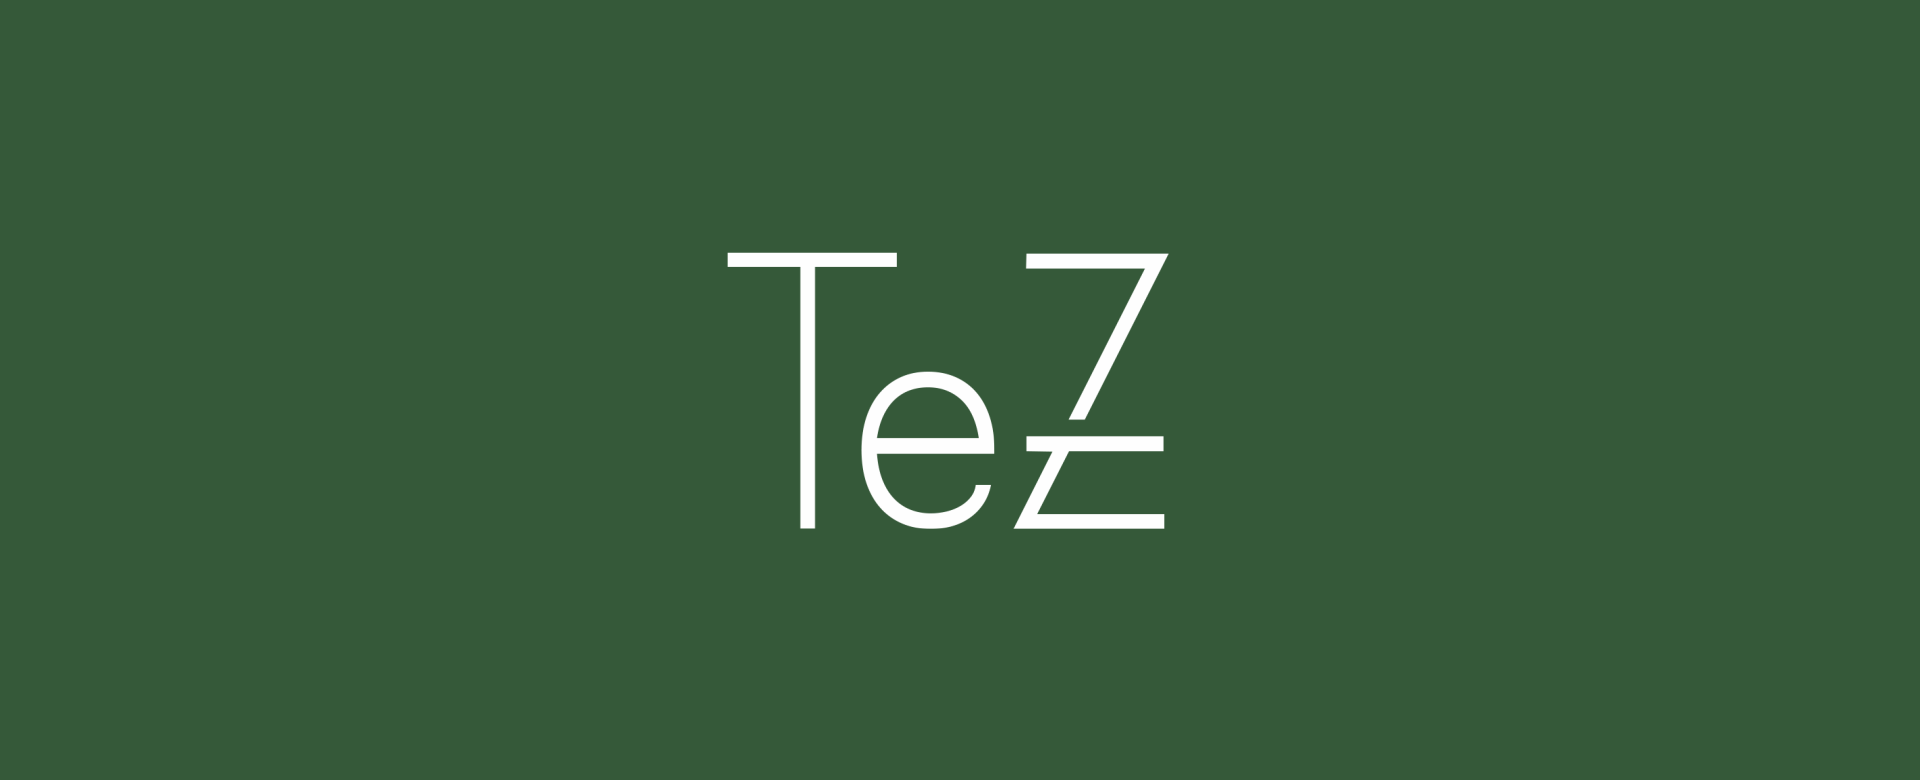 Tez Furniture by zen branding agency طراحی برای تز فرنیچر آژانس برندسا ذن (1)